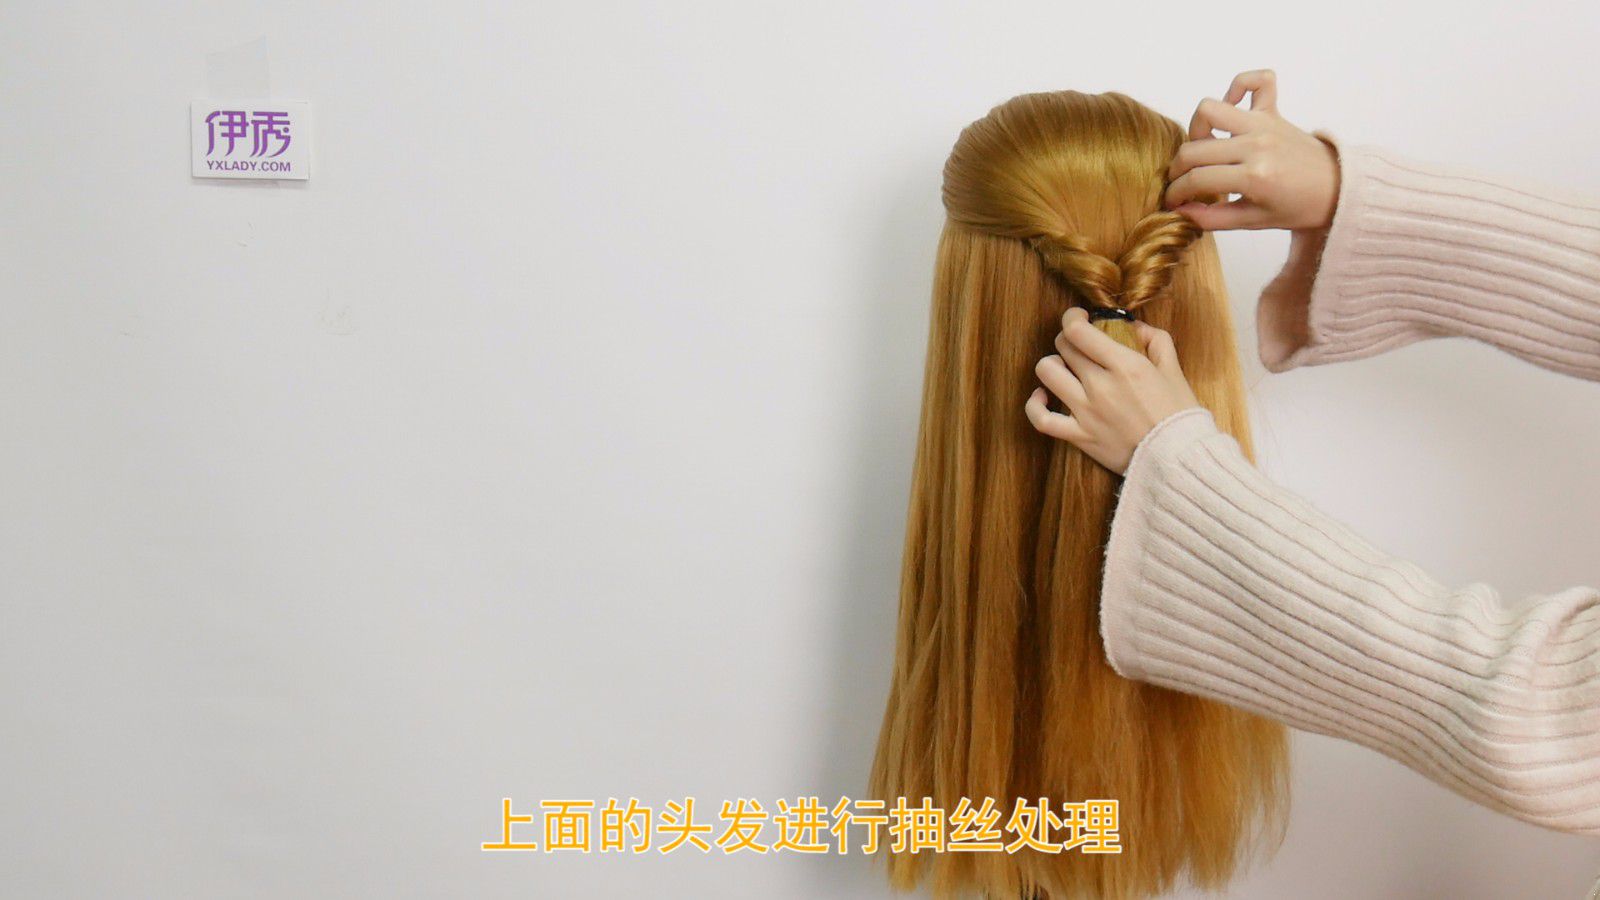 用发带怎么绑头发 发带发型绑法教程_伊秀视频|yxlady.com